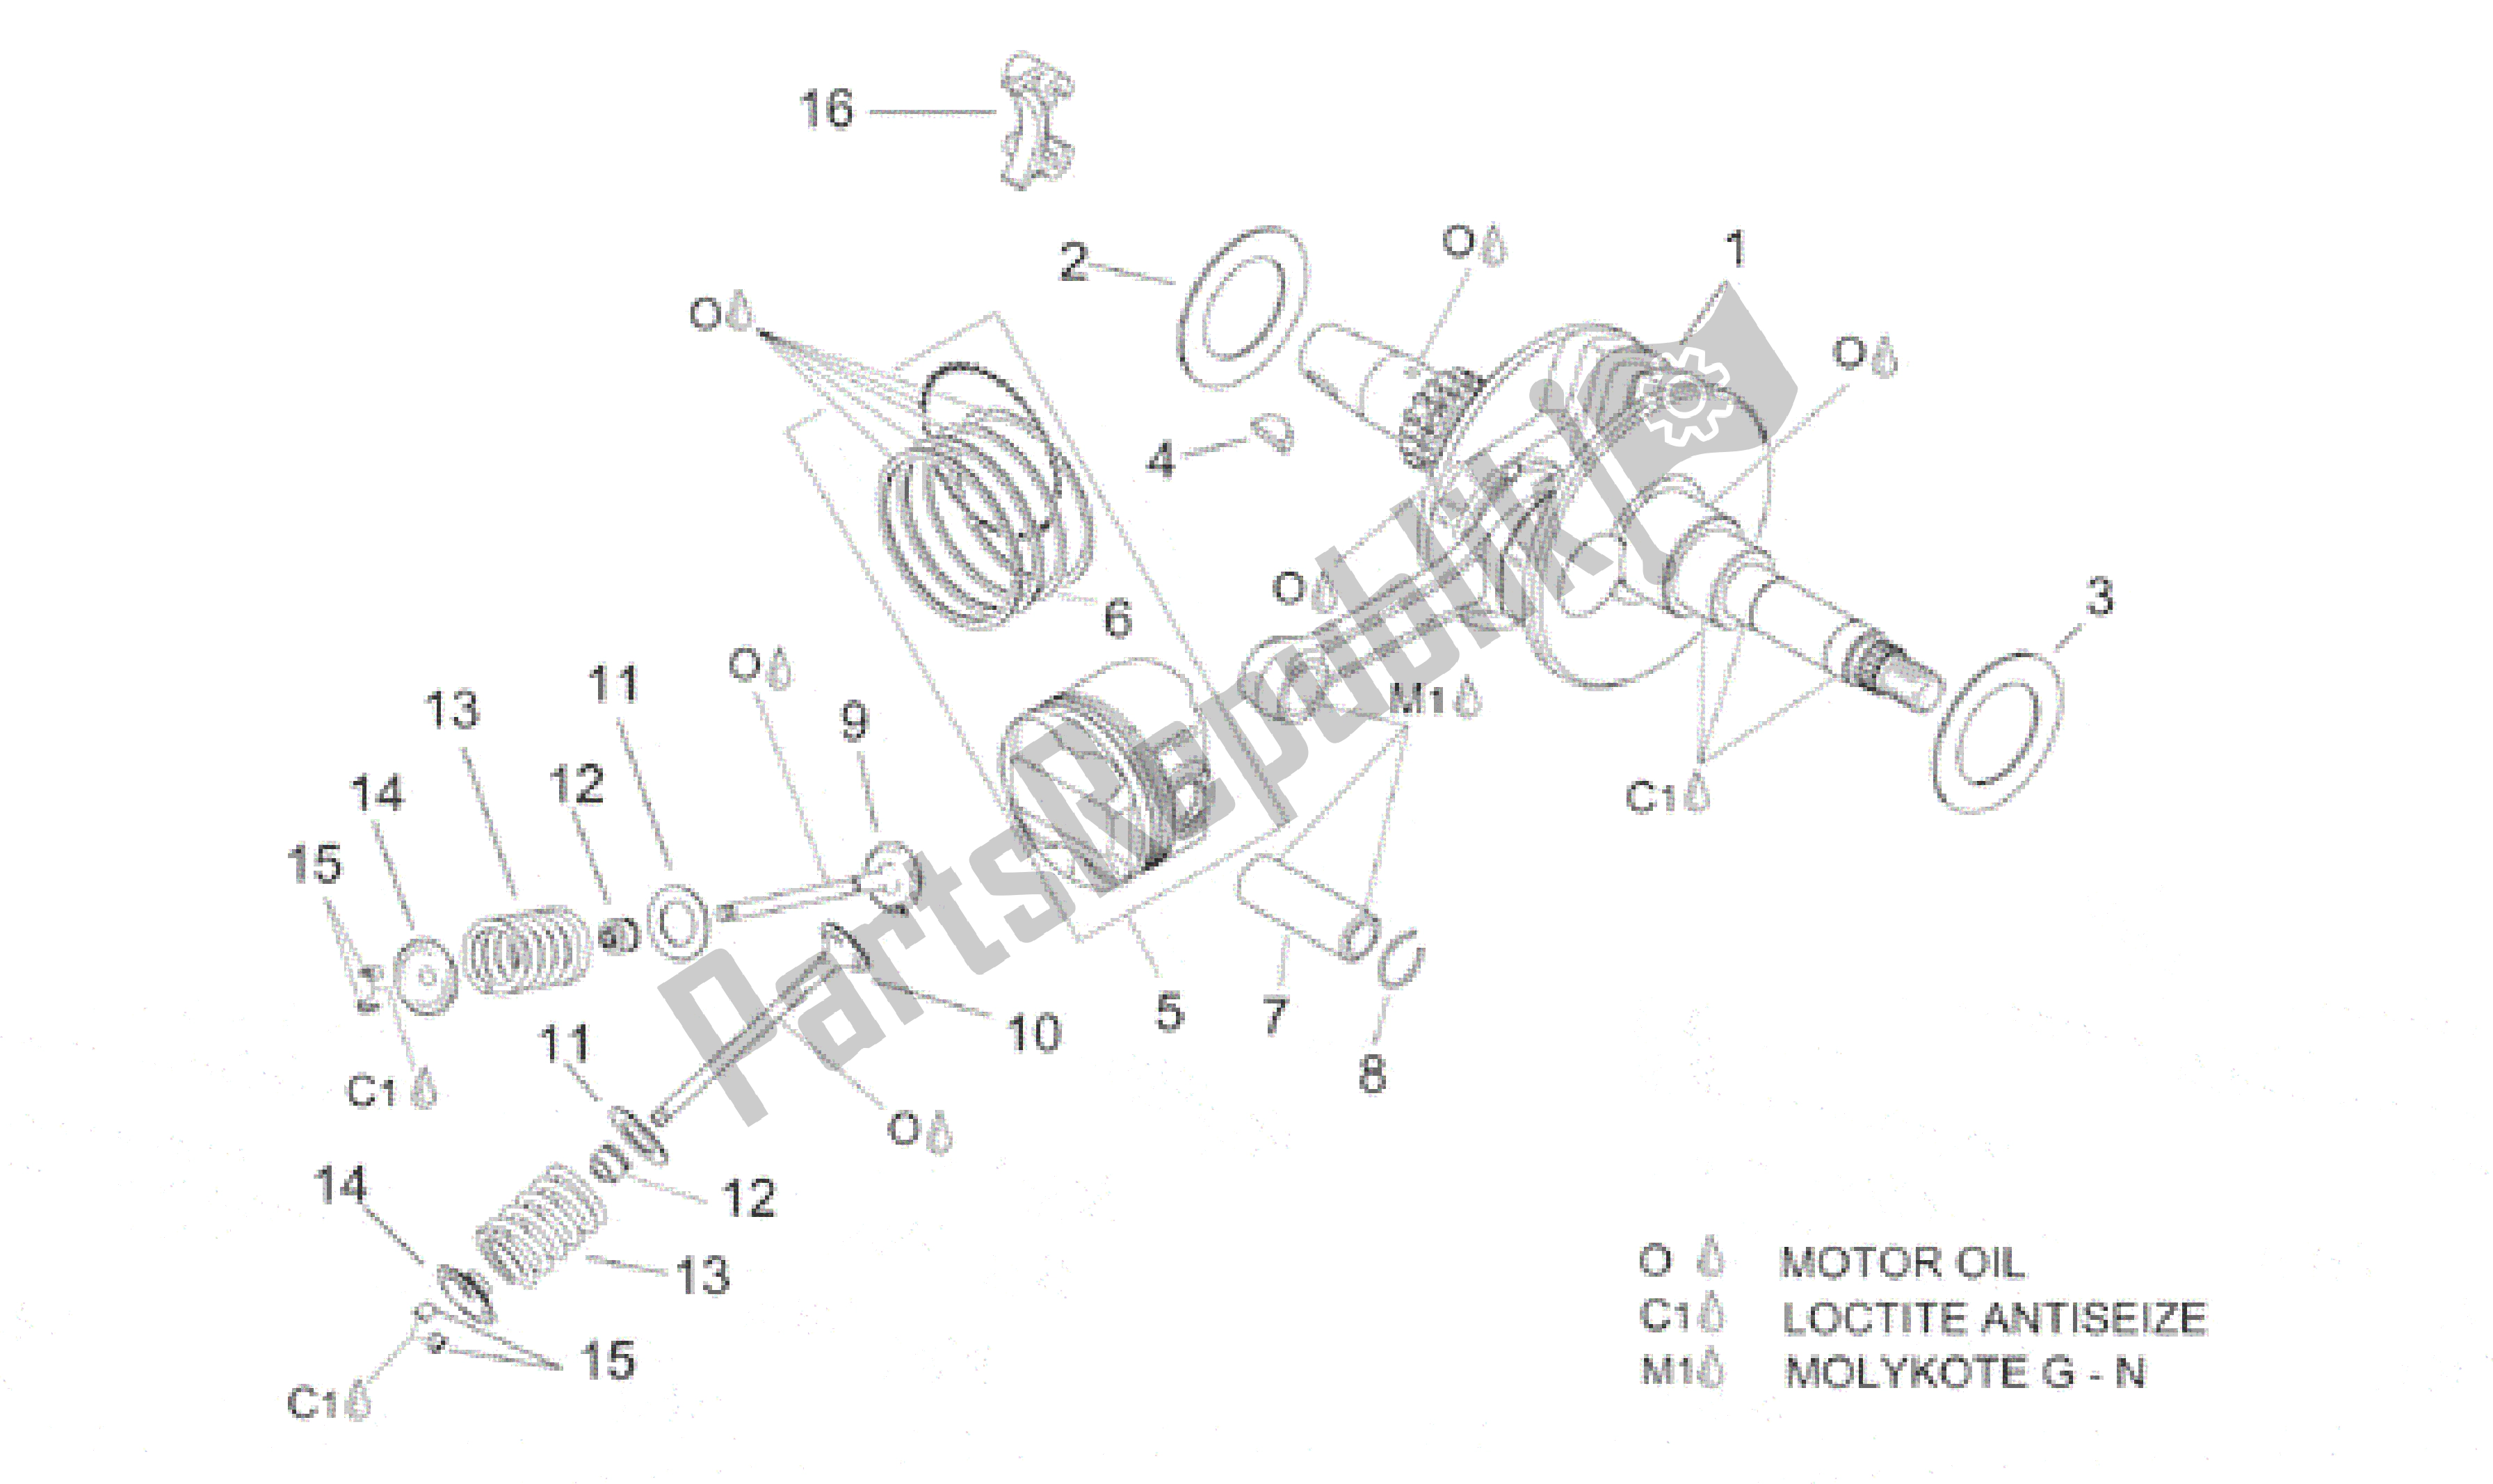 All parts for the Crankshaft - Valves of the Aprilia Leonardo 125 1999 - 2001